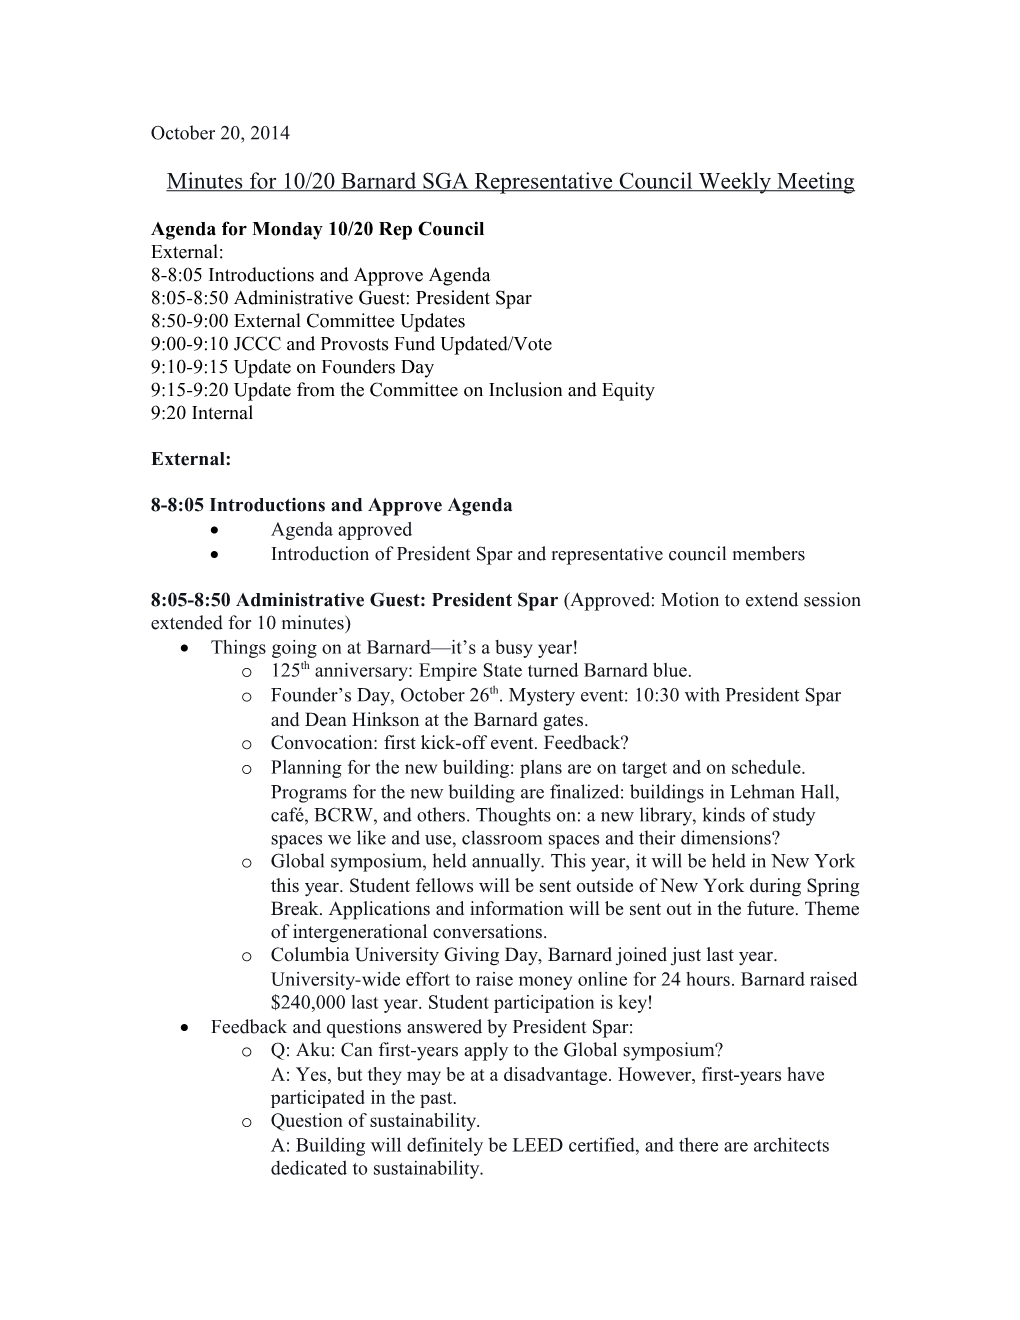 Minutes for 10/20 Barnard SGA Representative Council Weekly Meeting